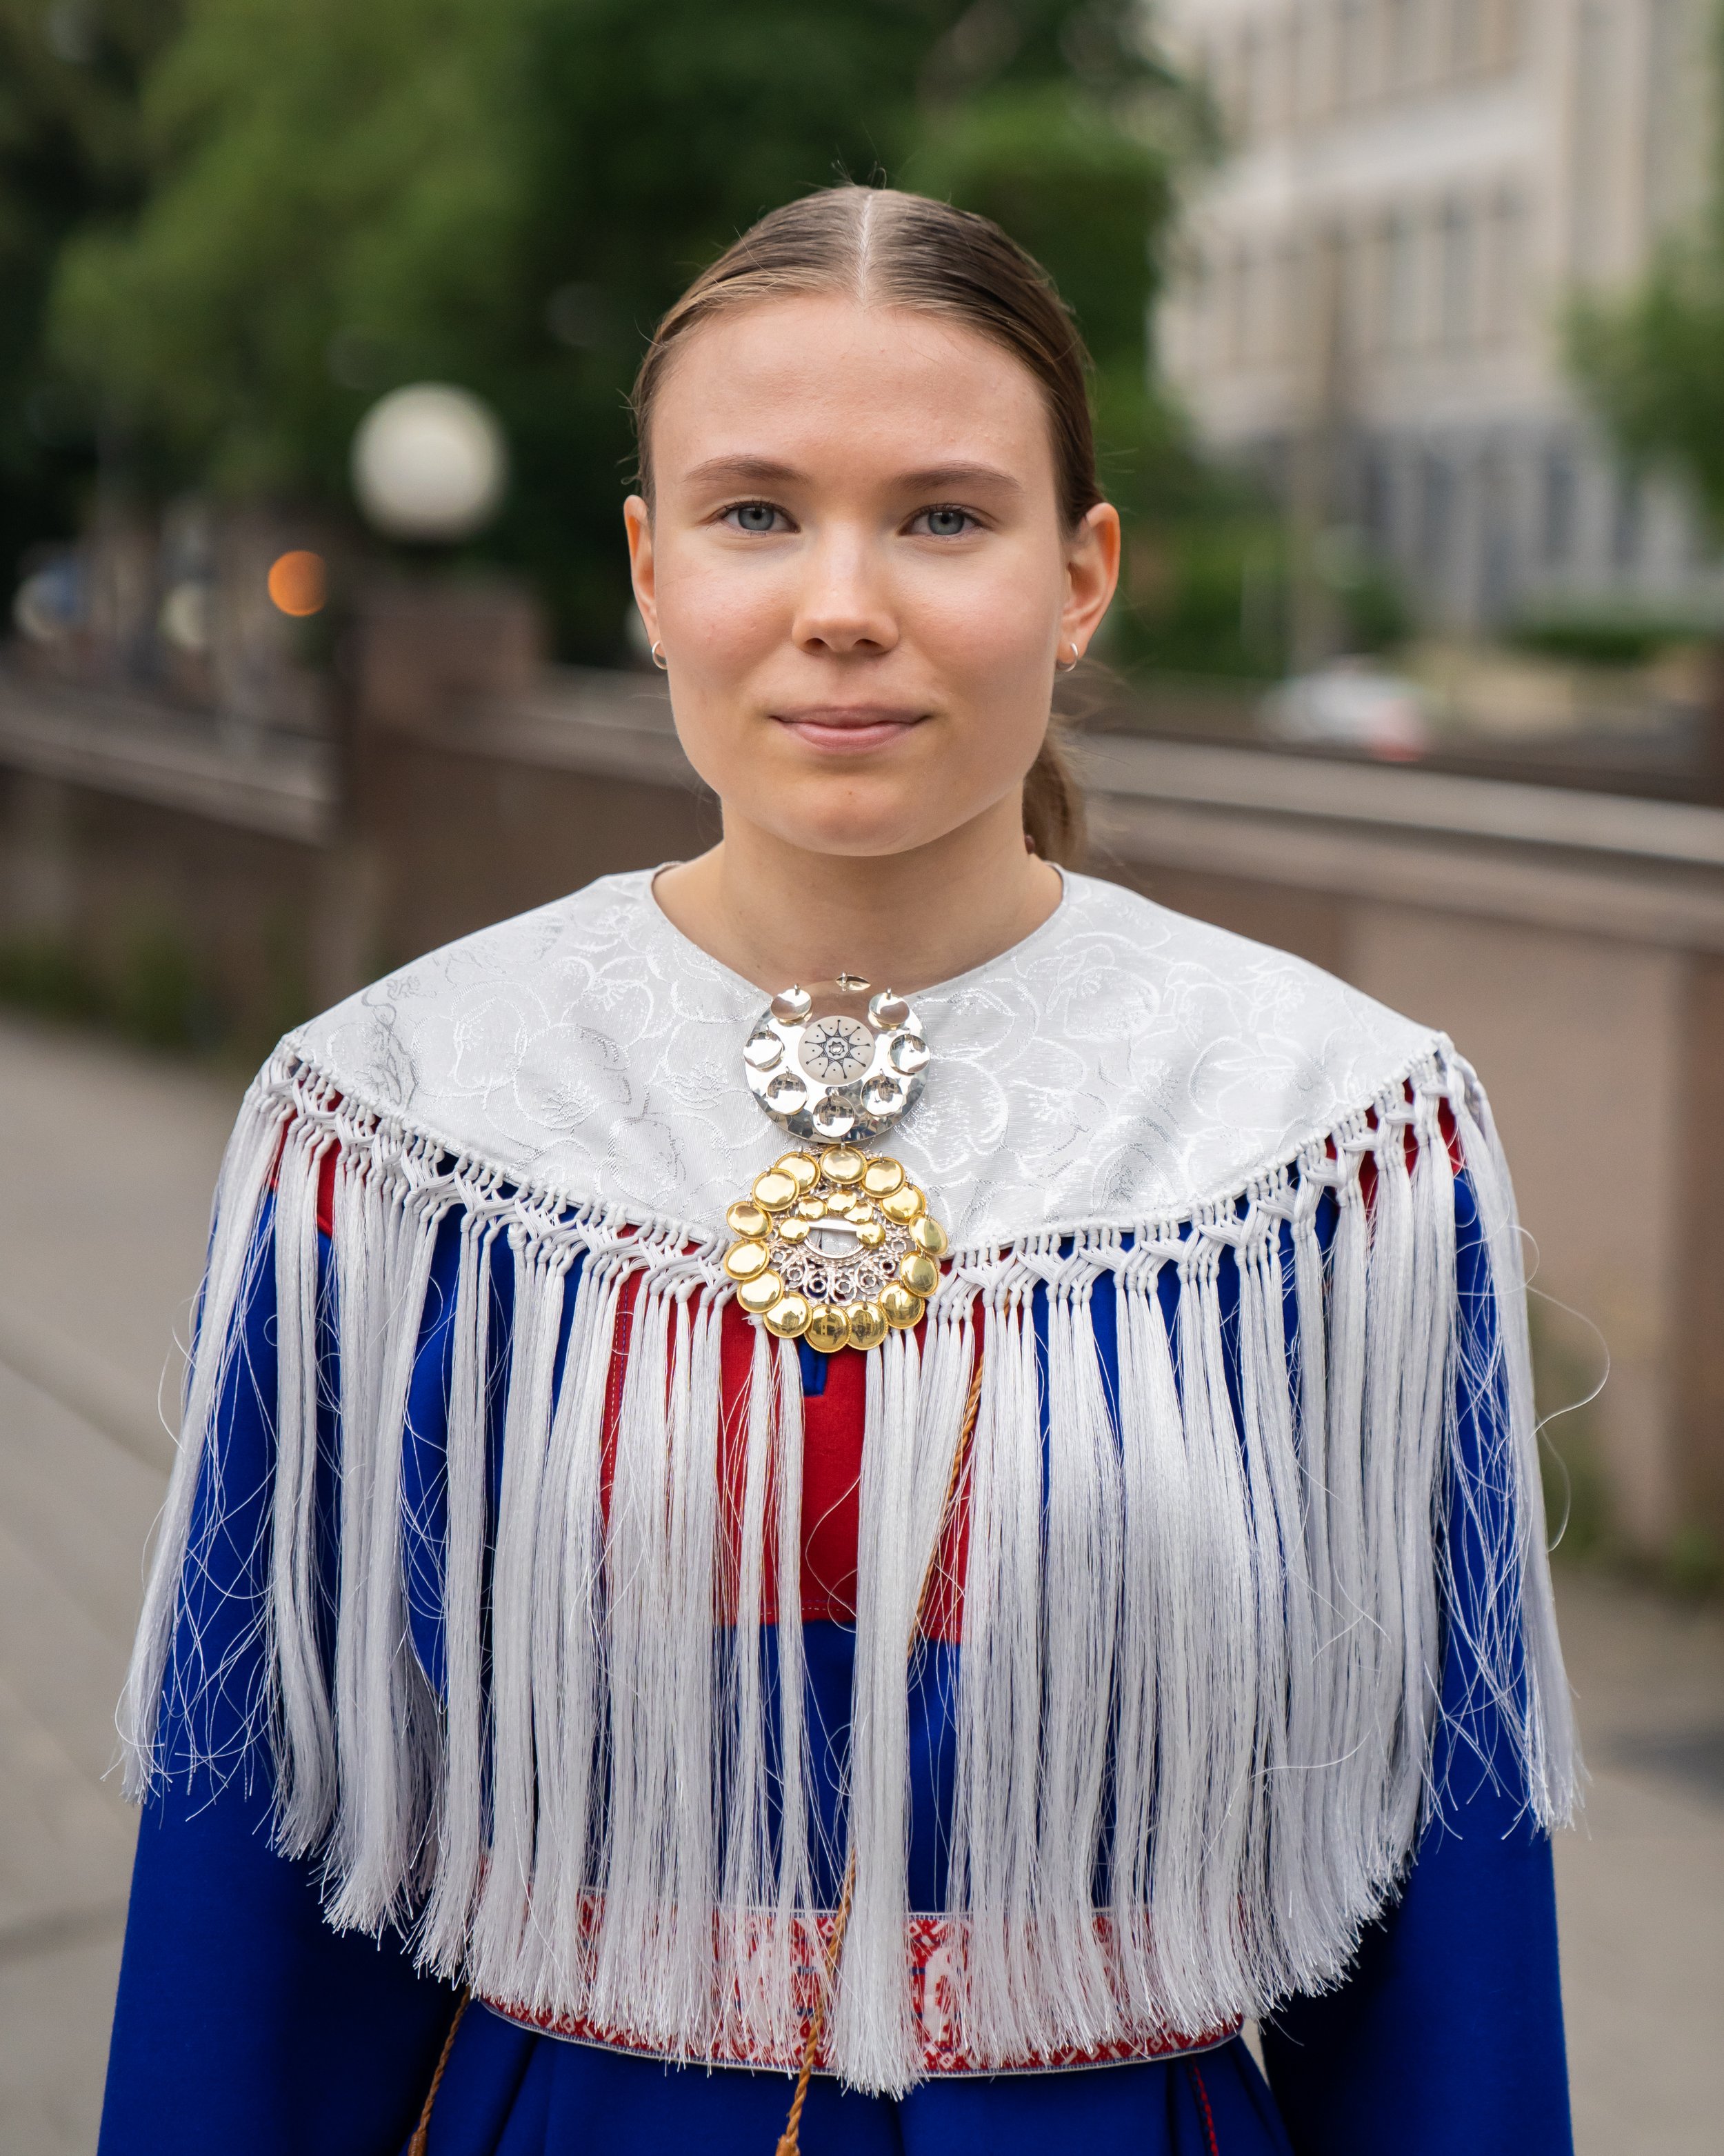 Lotta Hagelin (21, Helsinki, FIN)